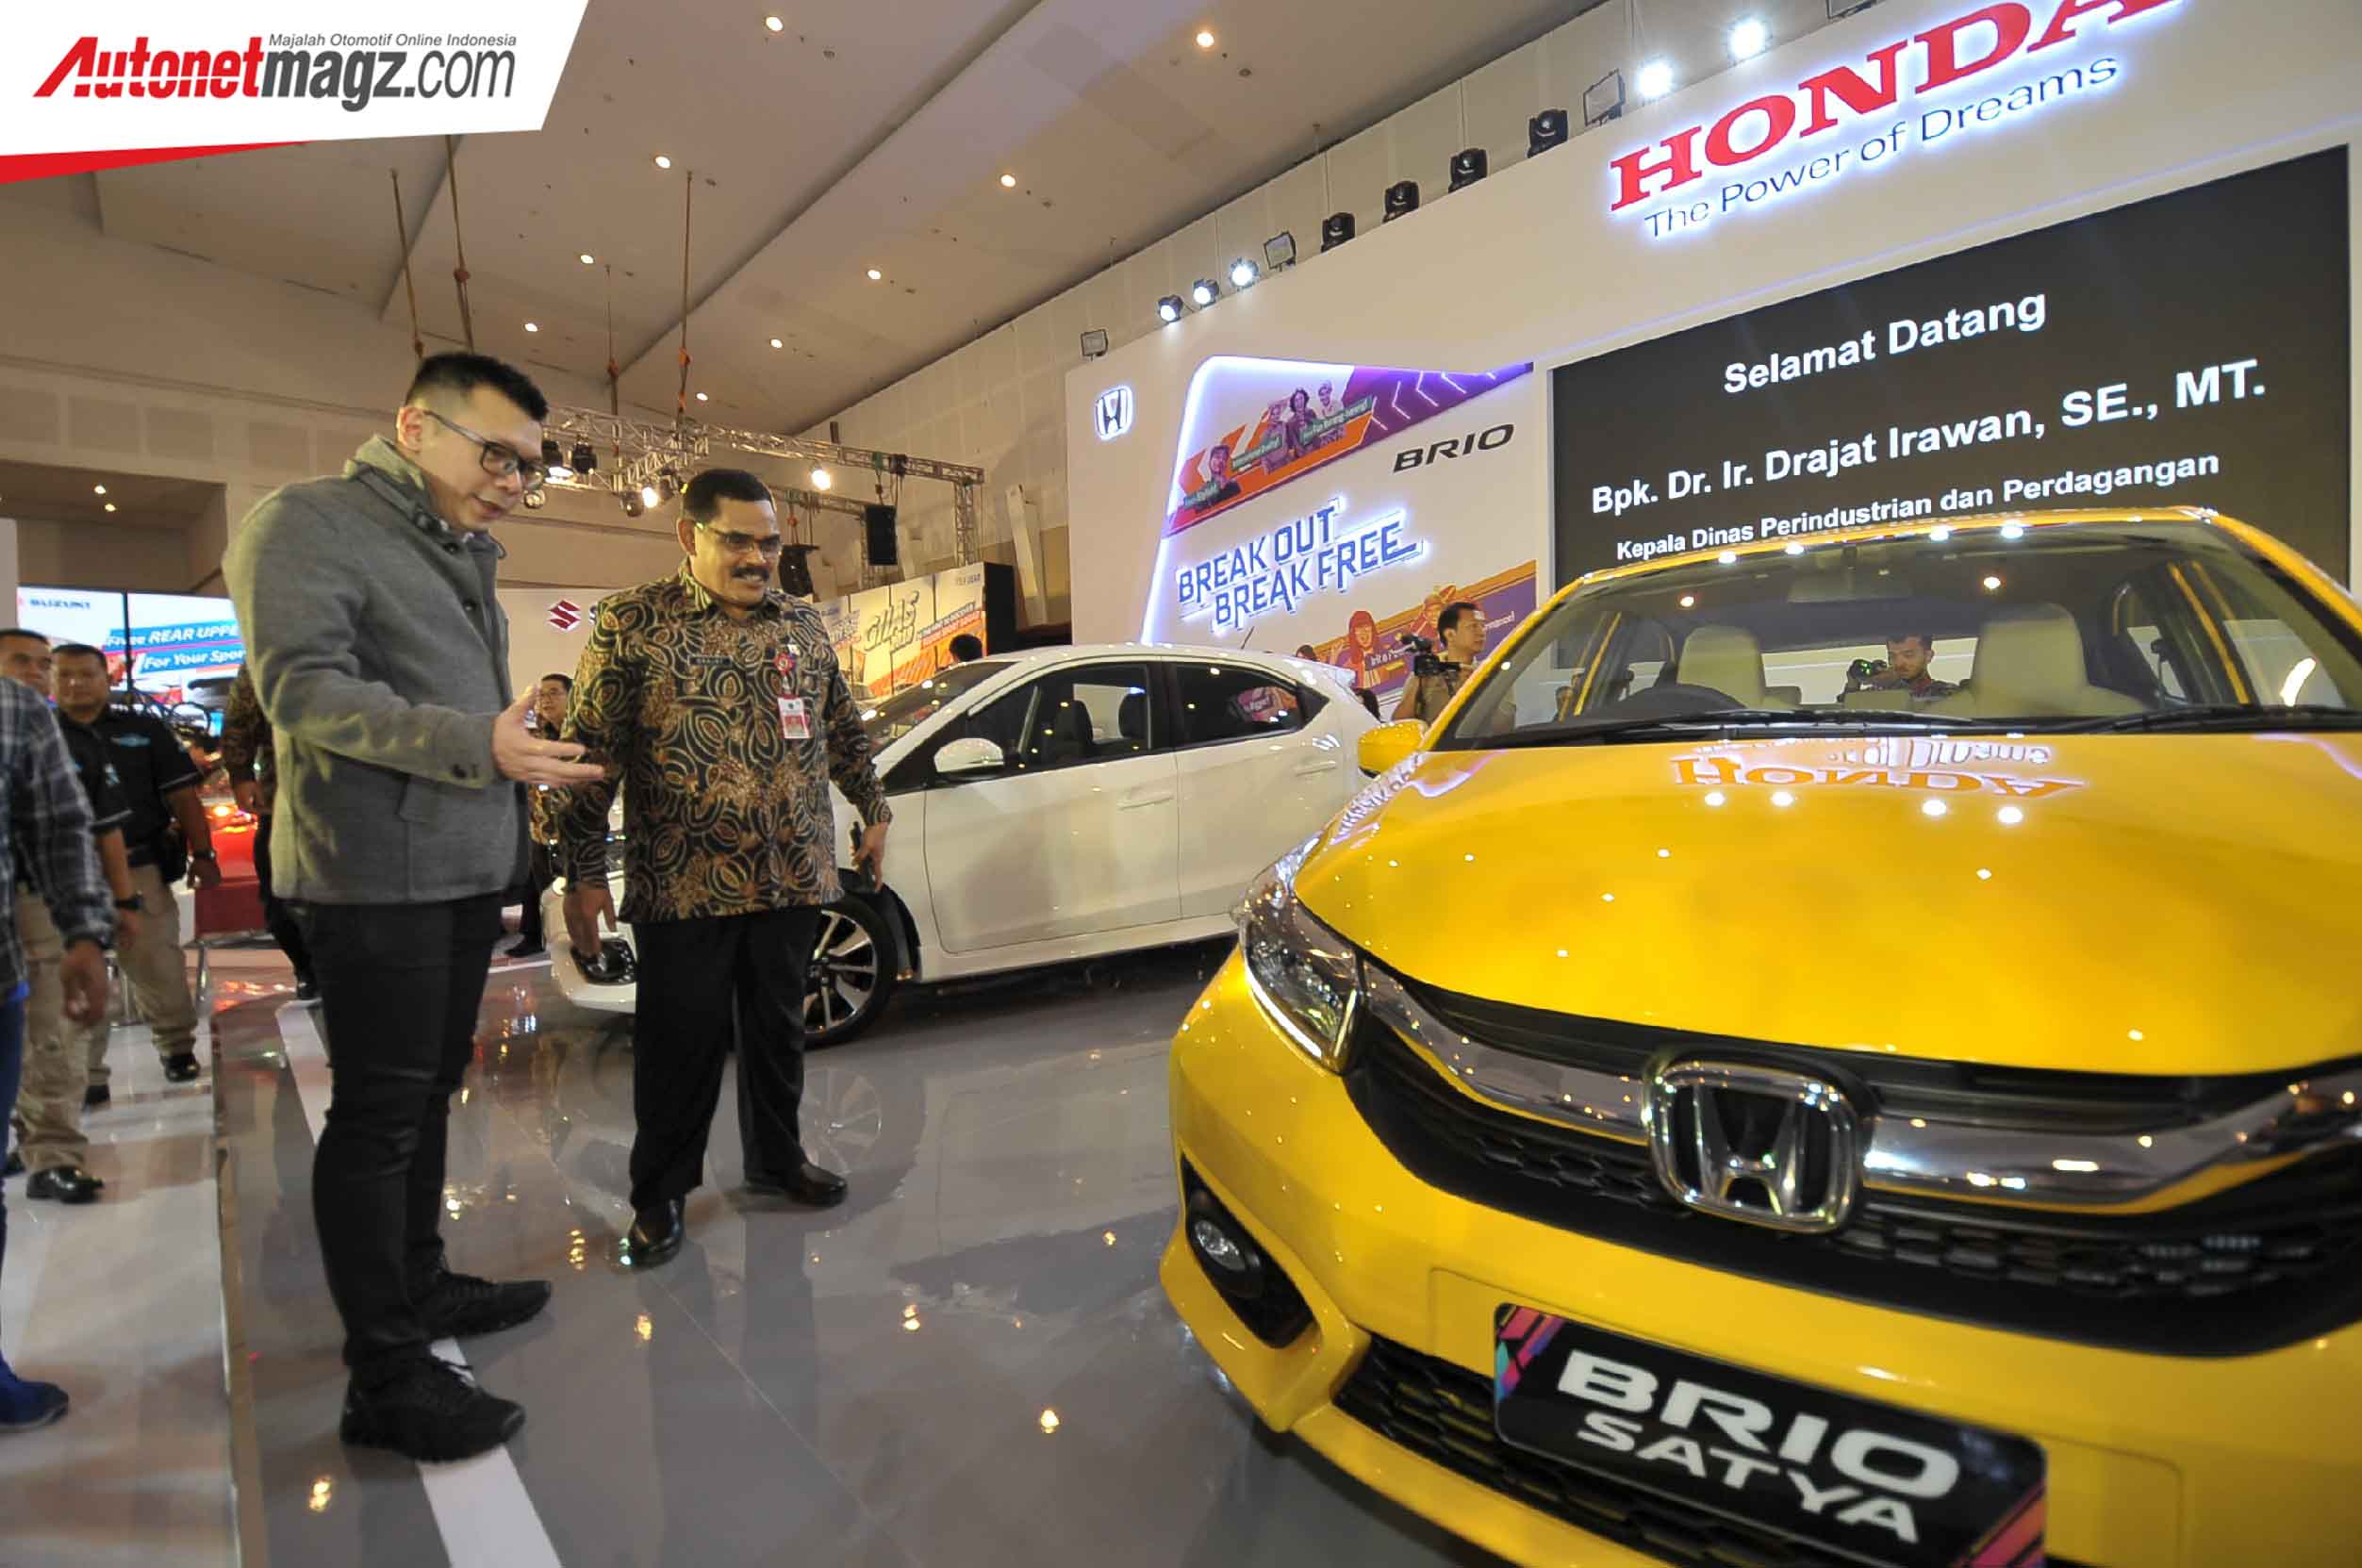 Berita, New Honda Brio GIIAS Surabaya 2018: Harga New Honda Brio Rilis di Surabaya, Selisih 10 Juta!